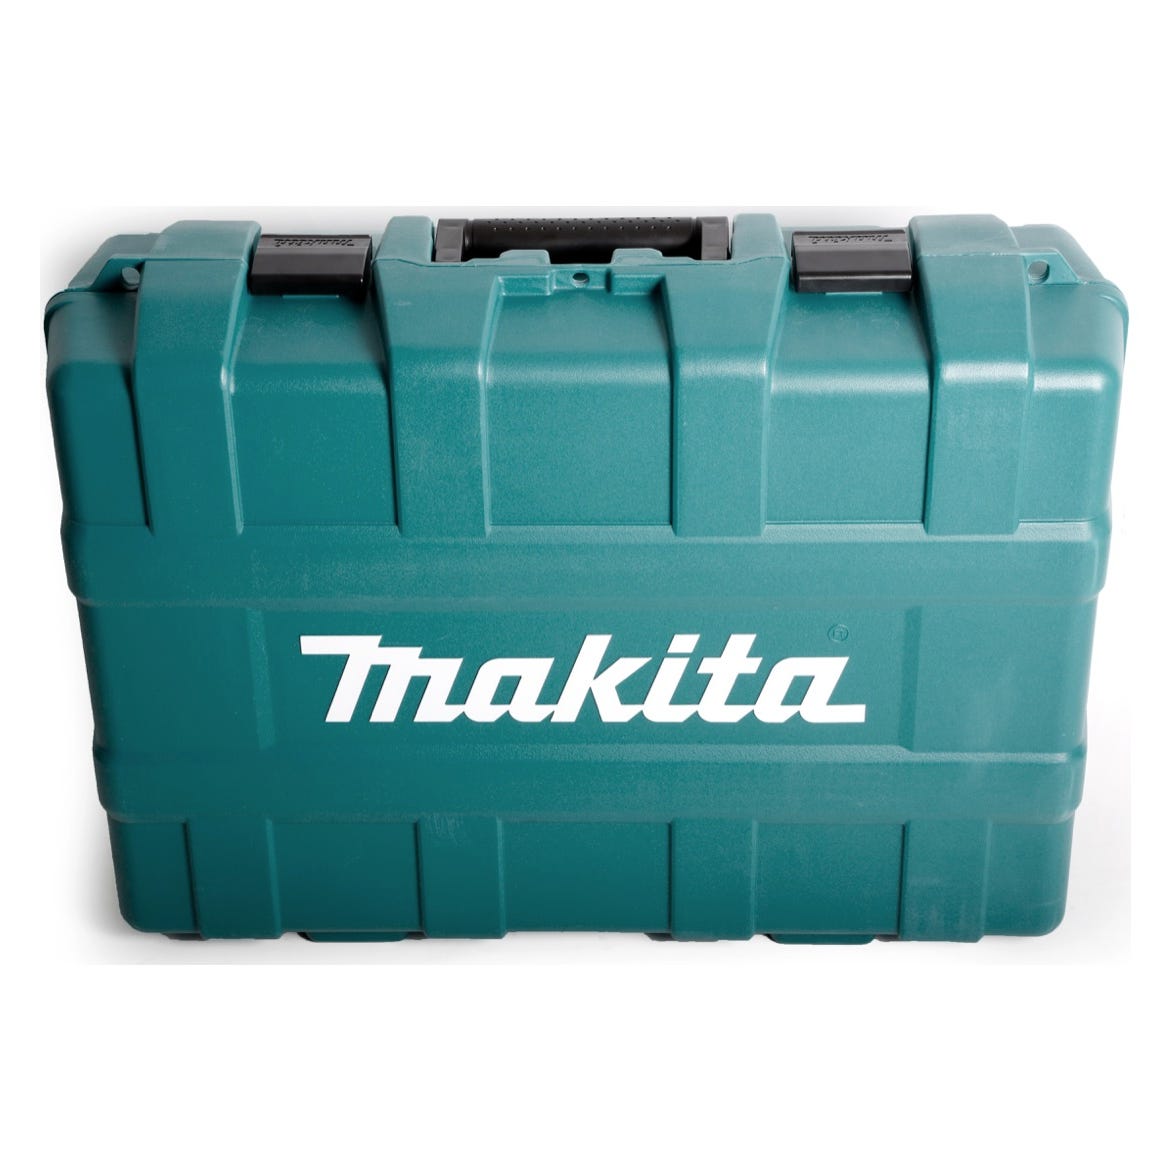 Makita DGA 901 ZKU2 36 V Meuleuse d'angle sans fil 230 mm + Coffret de transport - sans accessoires, sans Batterie, sans Chargeur 2